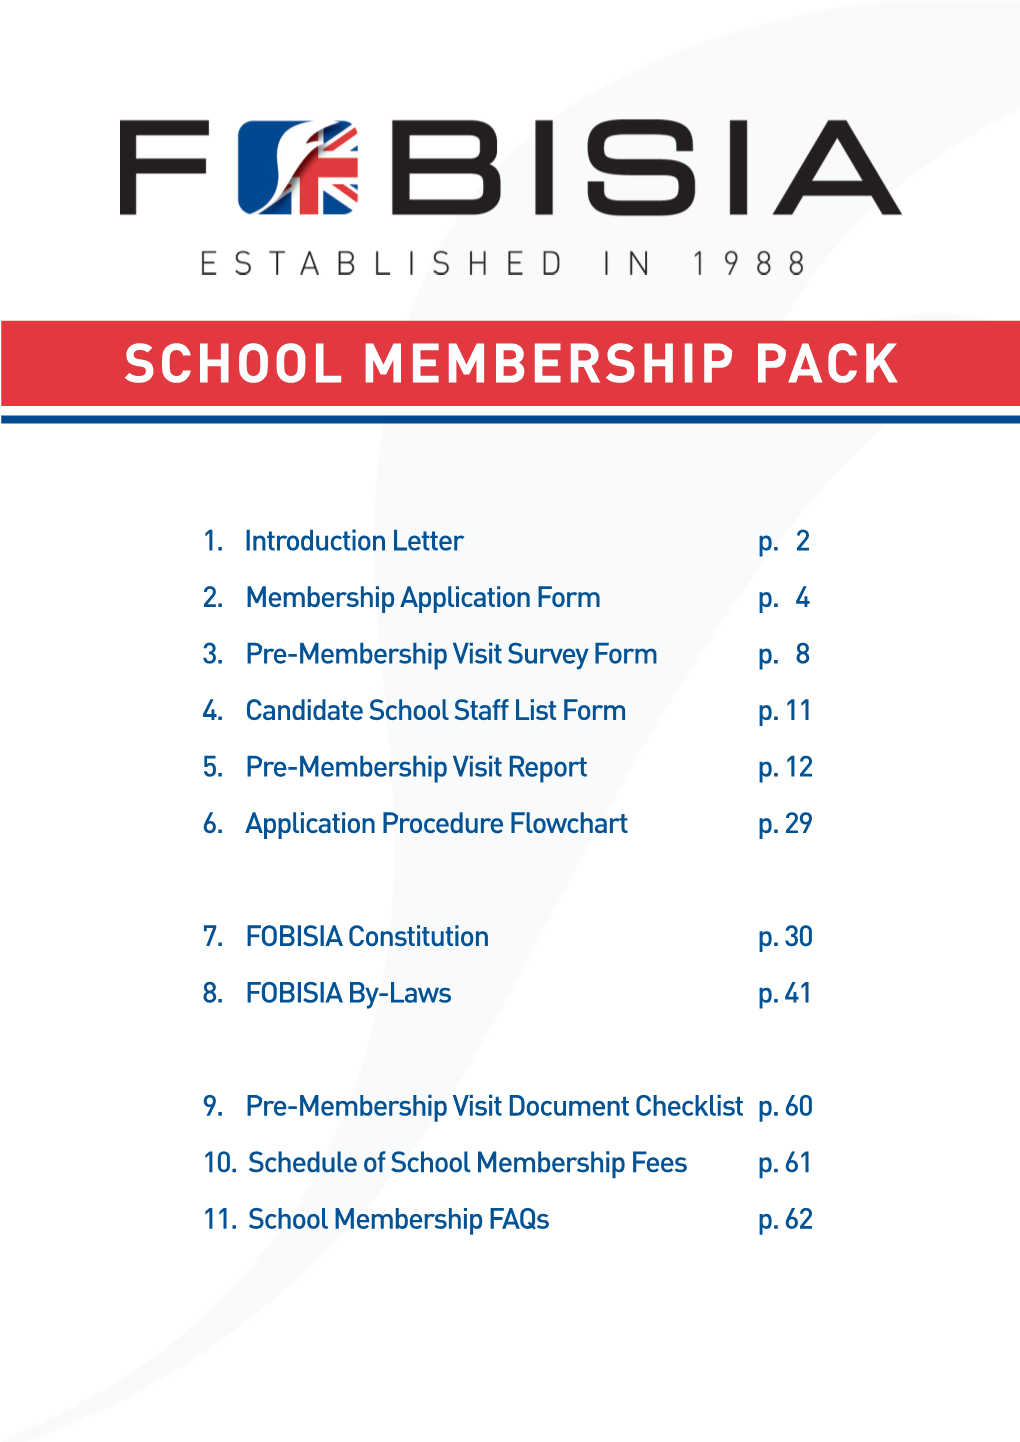 School Membership Pack